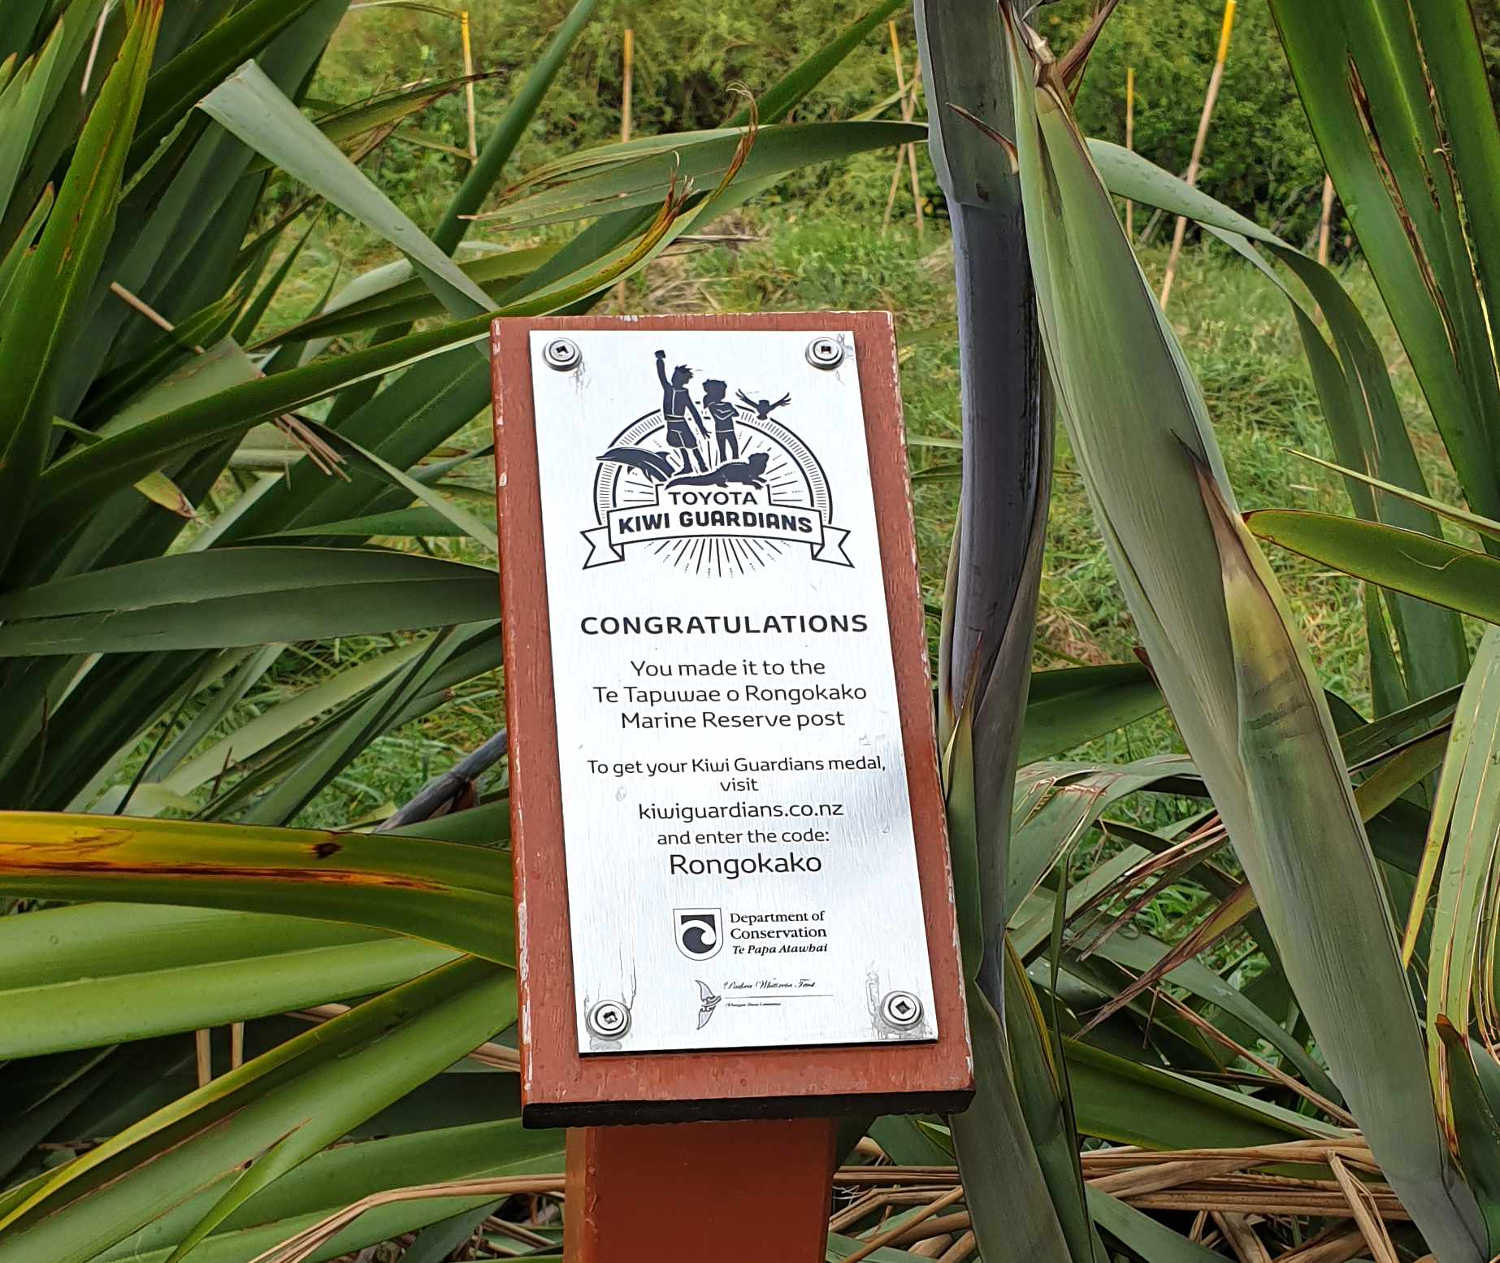 Rongokako Marine Reserve, Gisborne Kiwi Guardians award, New Zealand